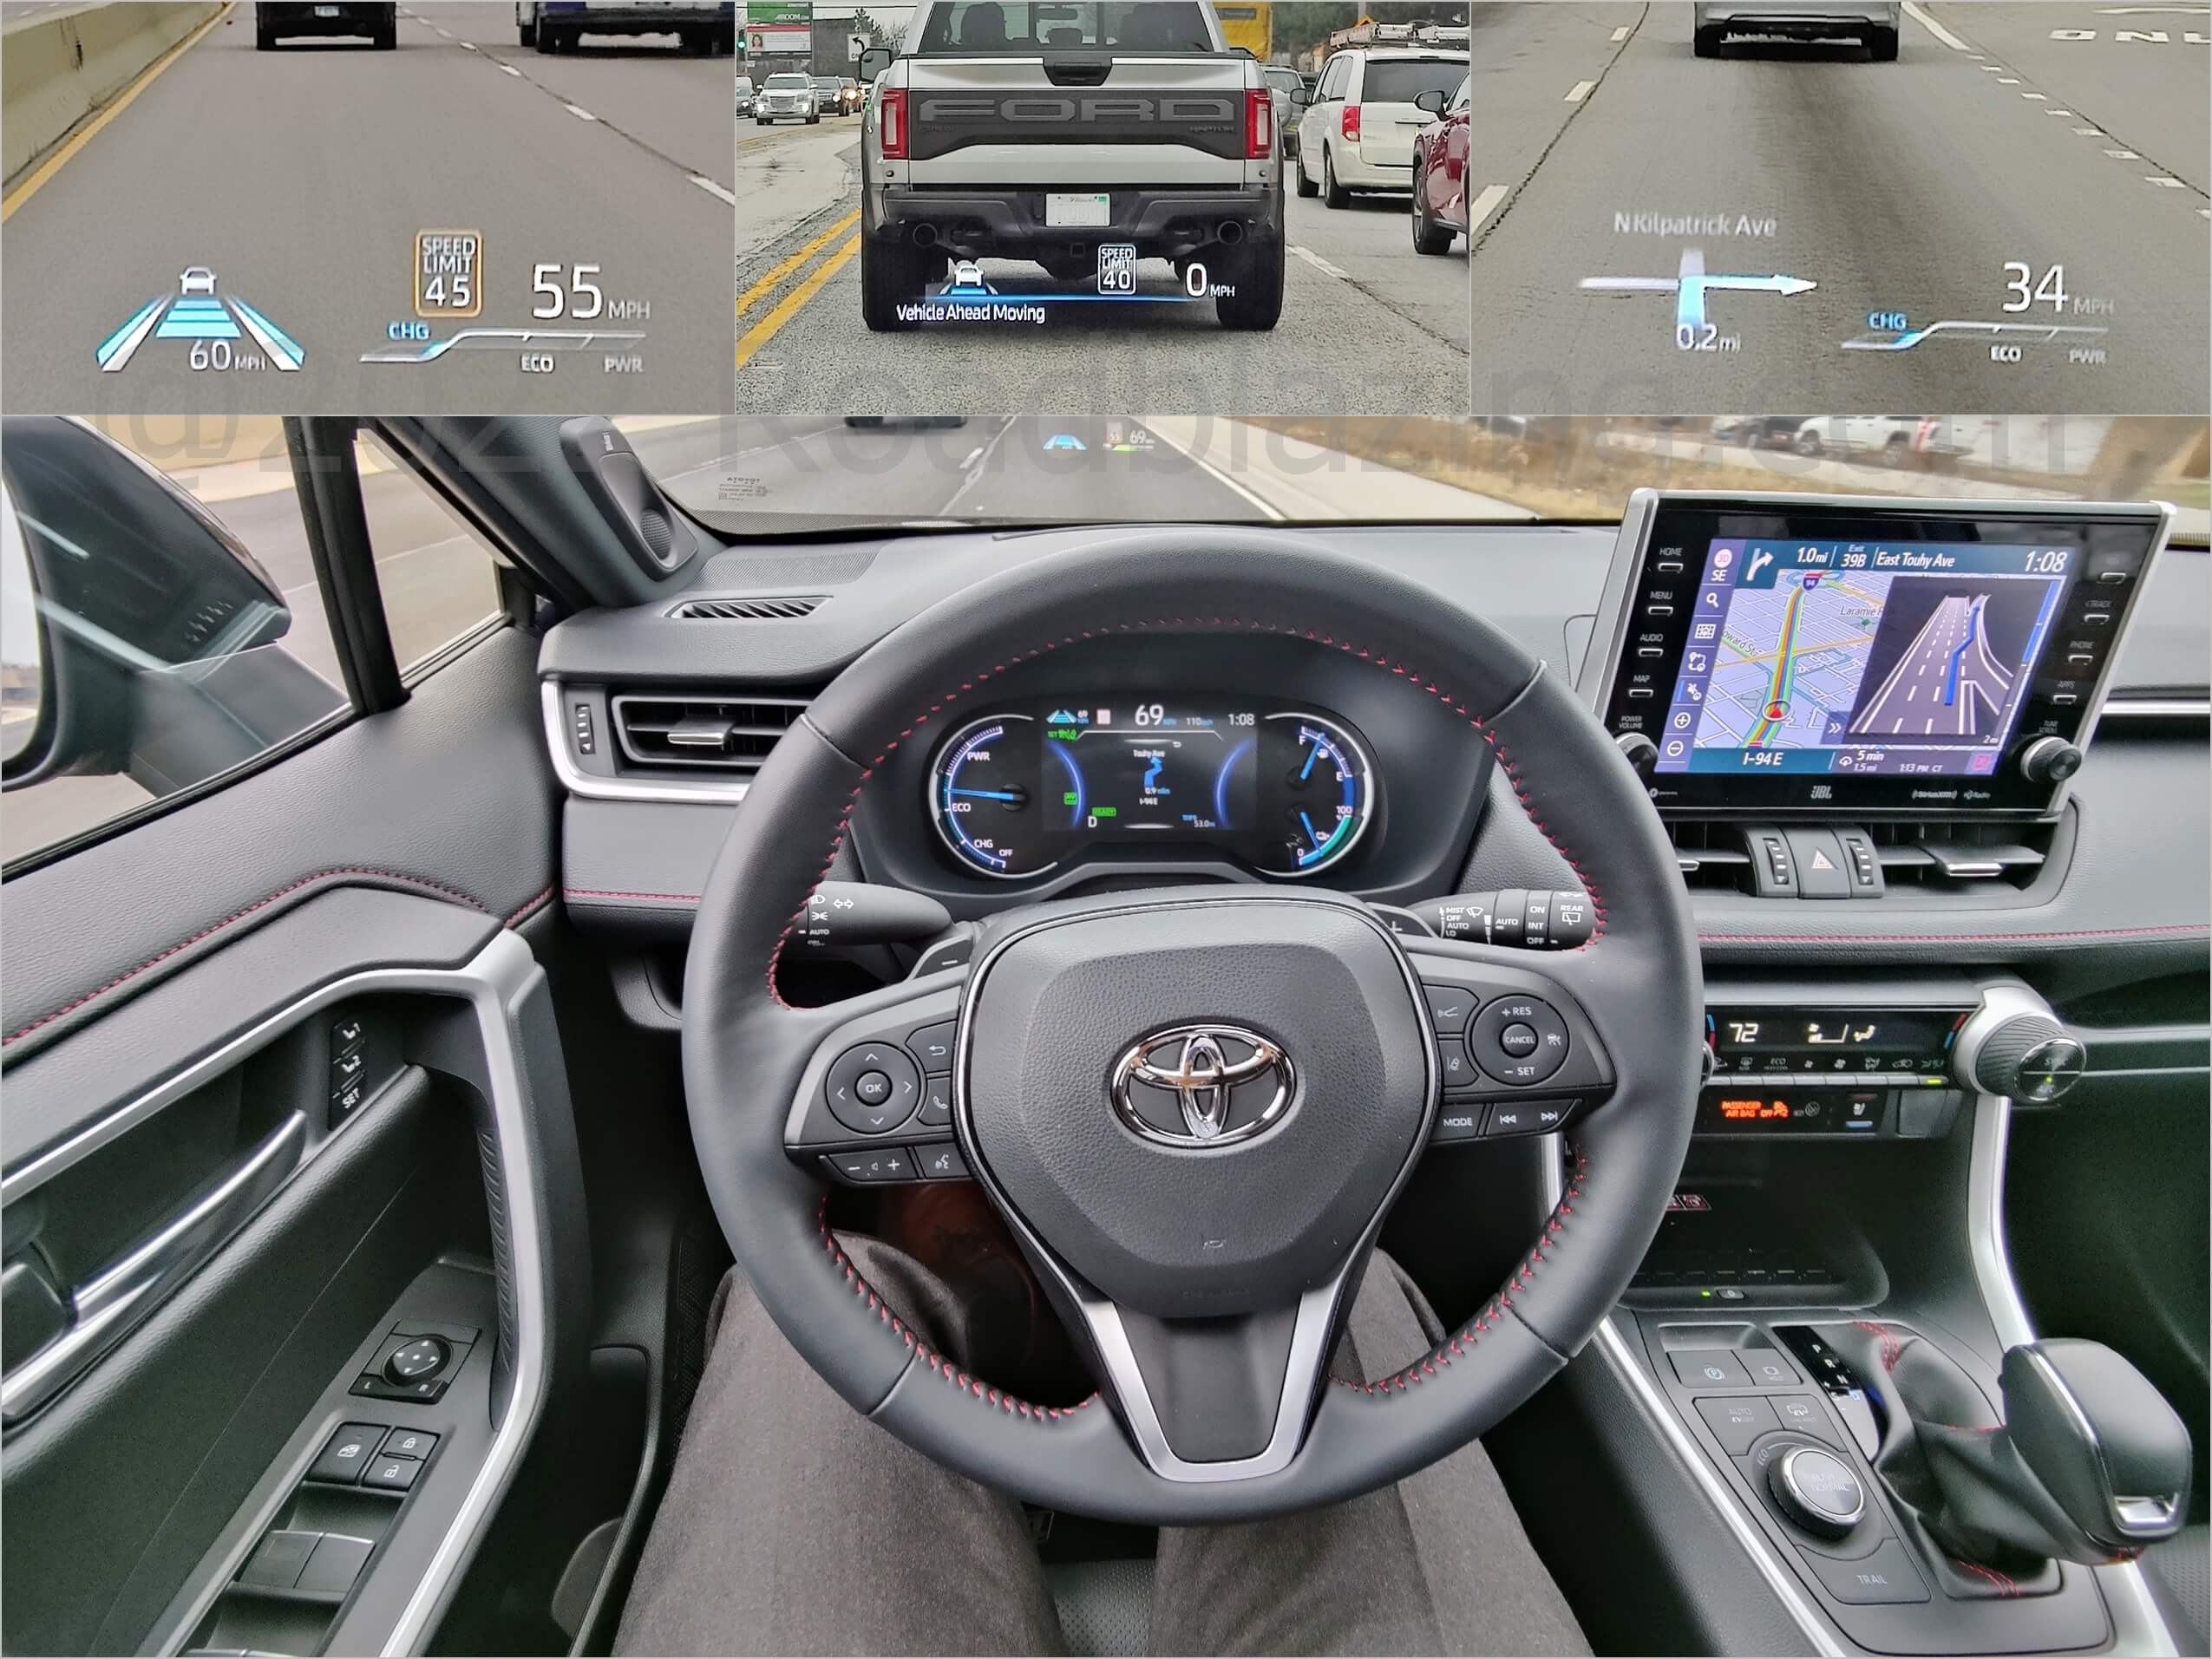 2022 Toyota RAV4 Prime XLE AWD PHEV: cloud sourced GPS navigation & Level 2.0 autonomous driving assistance